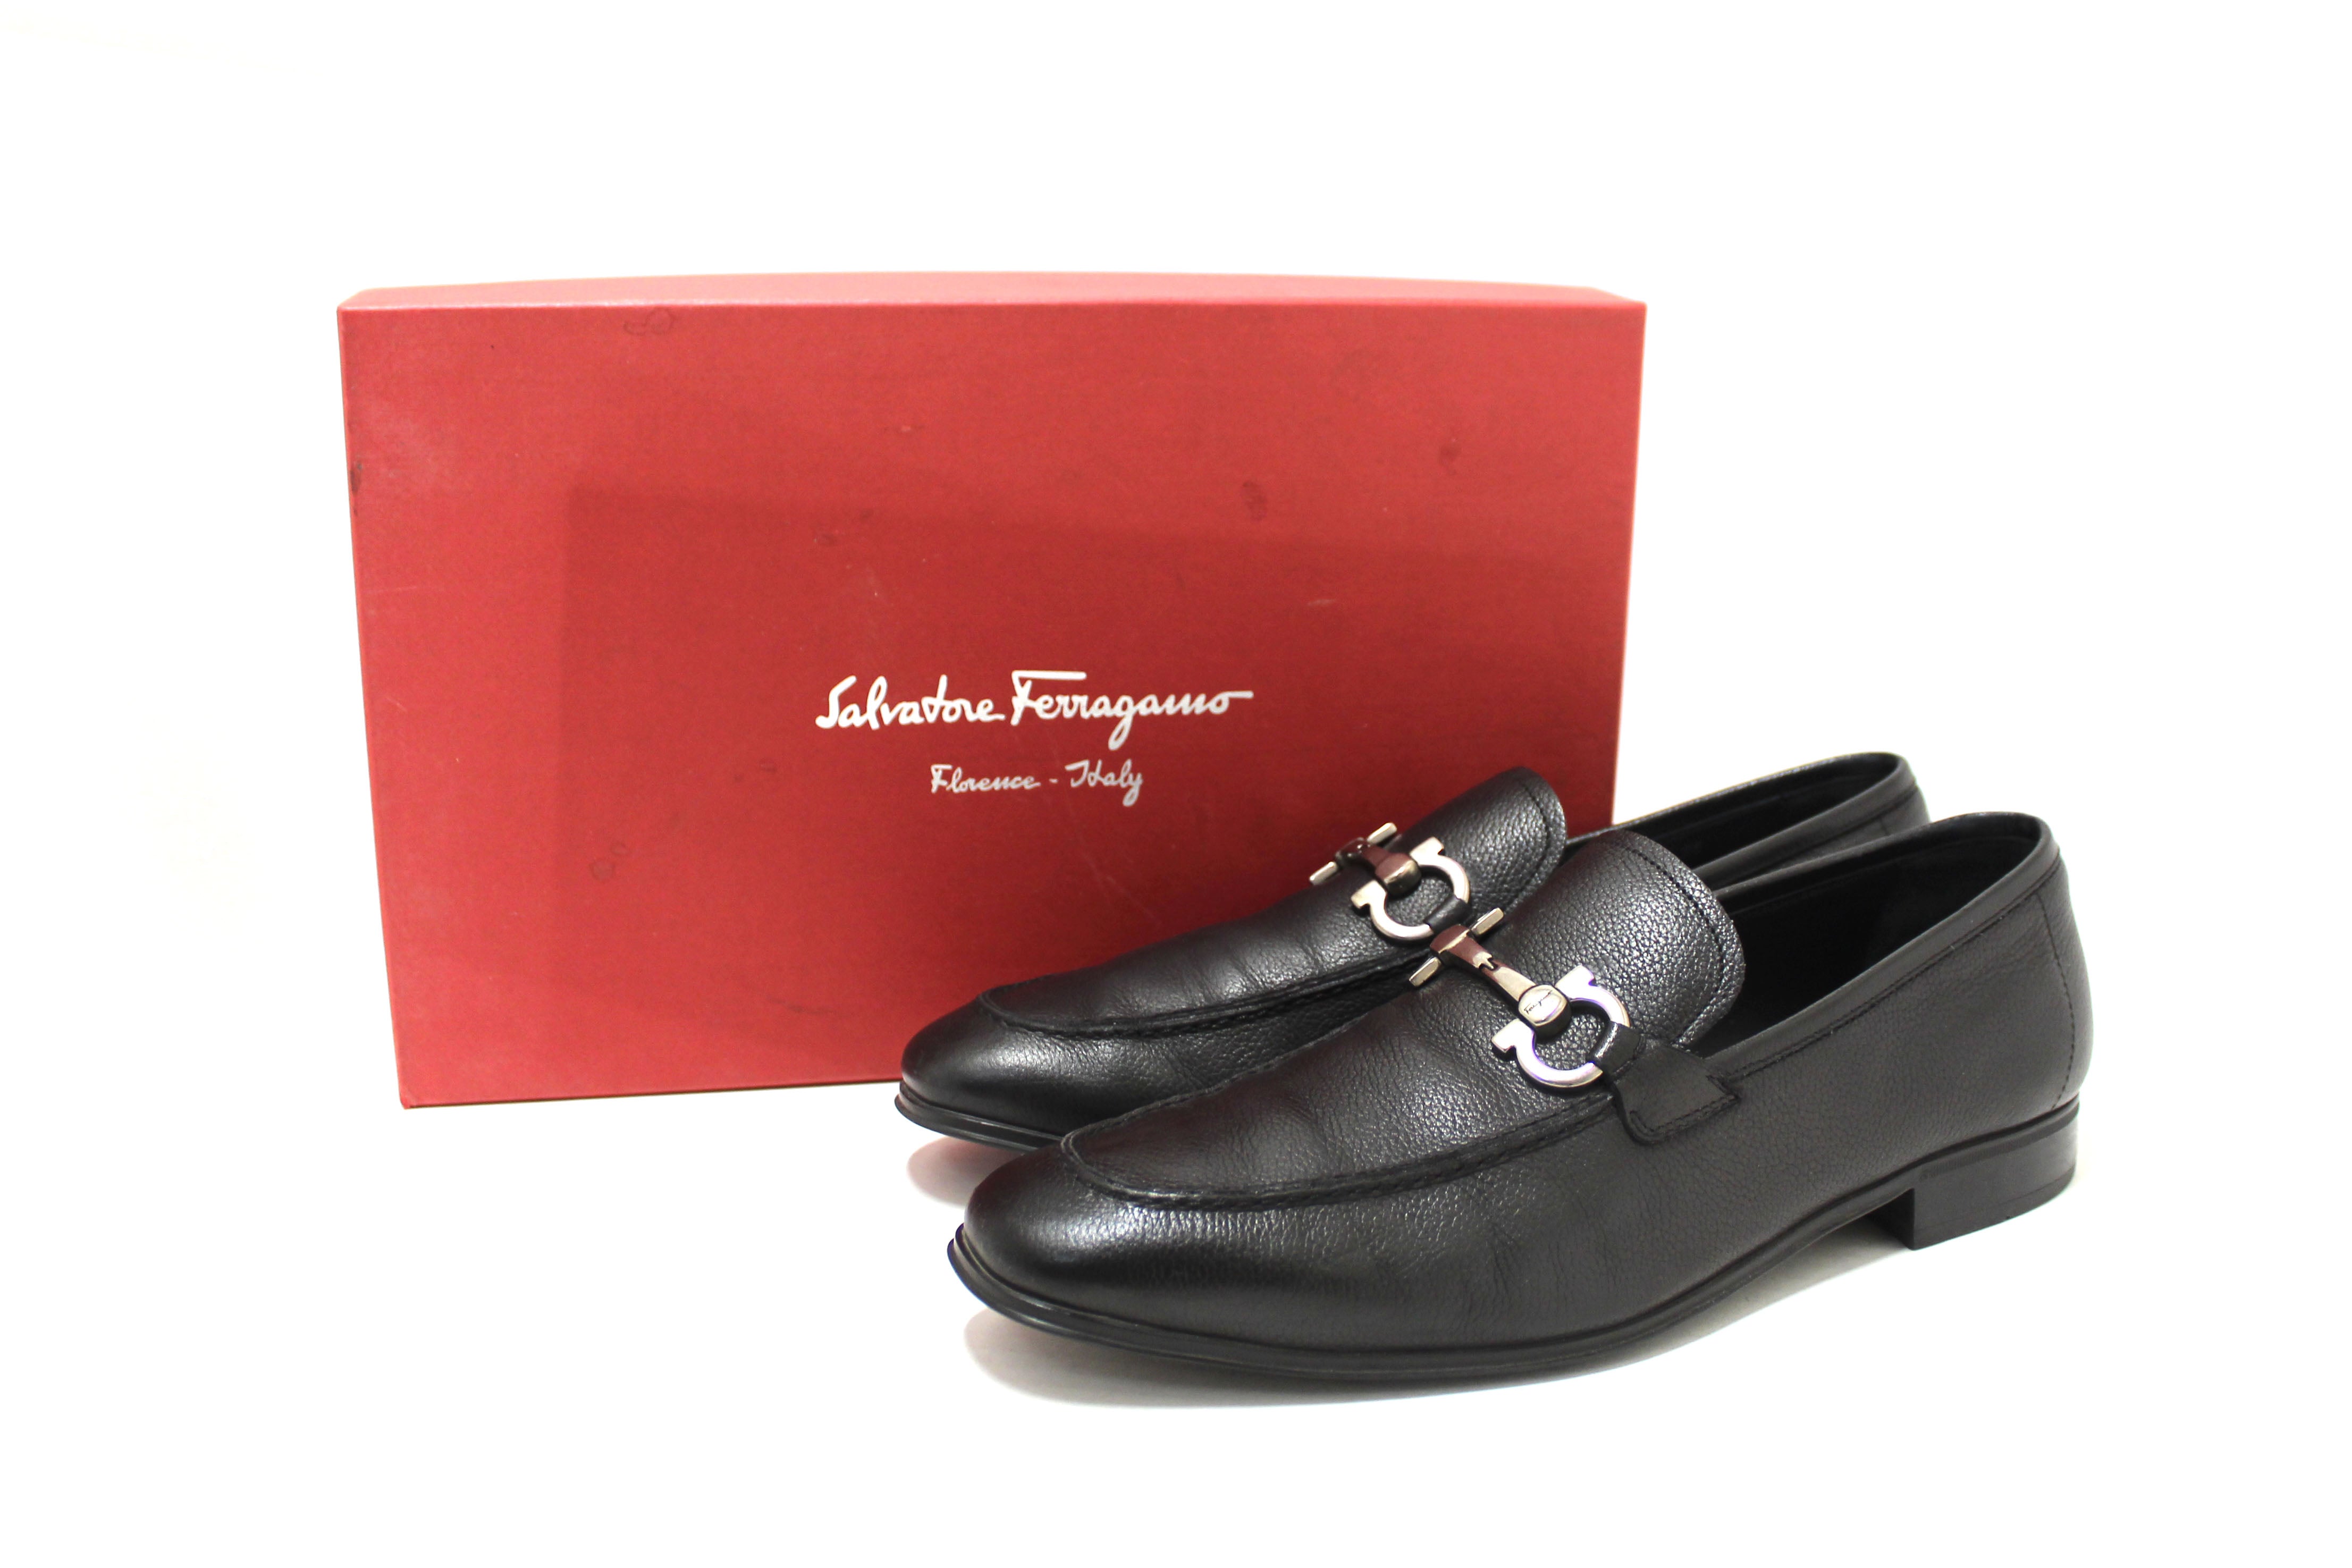 Authentic Salvatore Ferragamo Men's Black Flori Calf Leather Loafer Dress Shoes size 8